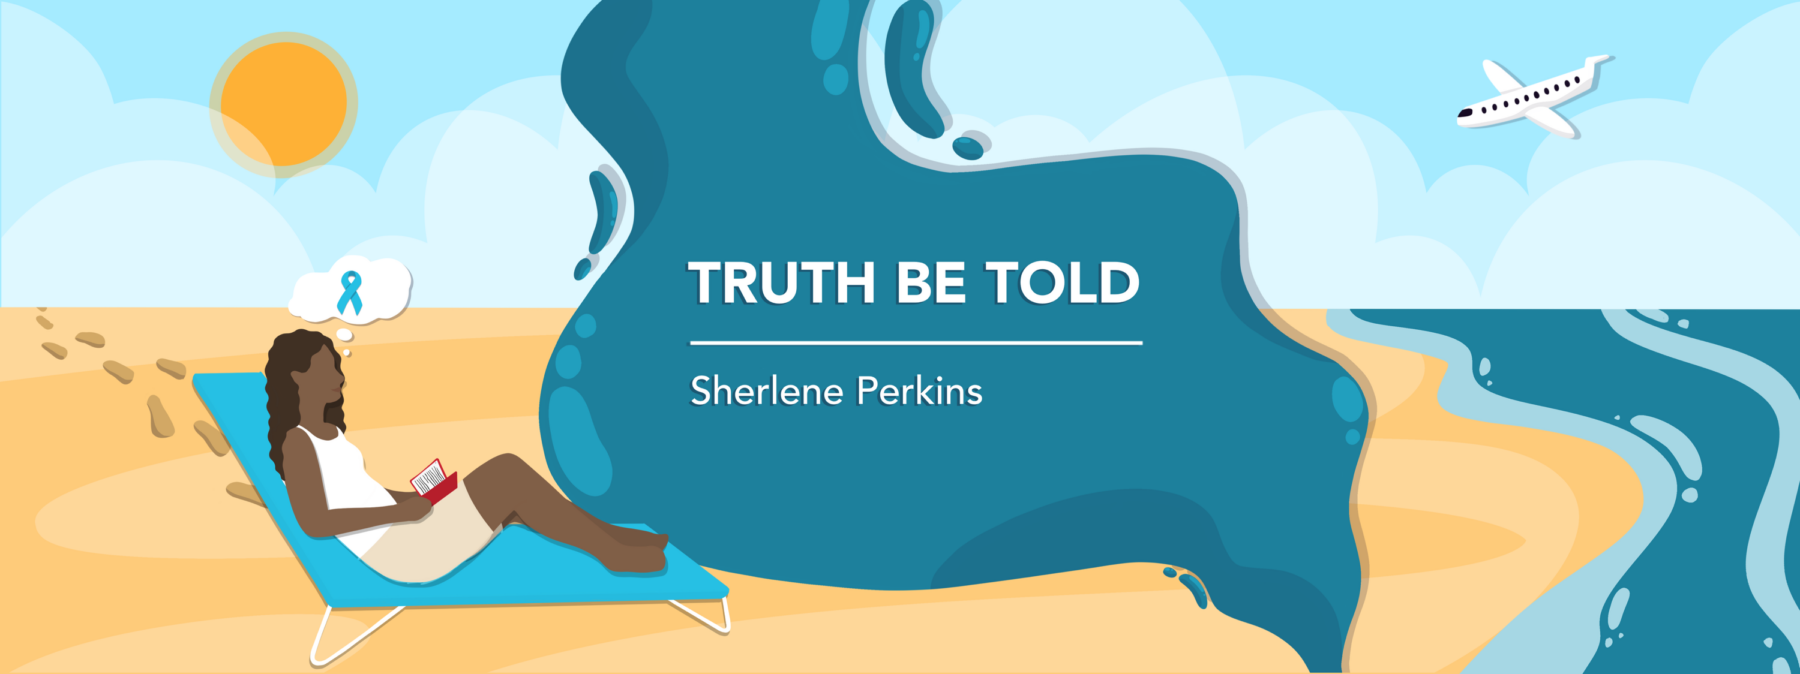 Column banner for Sherlene Perkins "Truth Be Told"